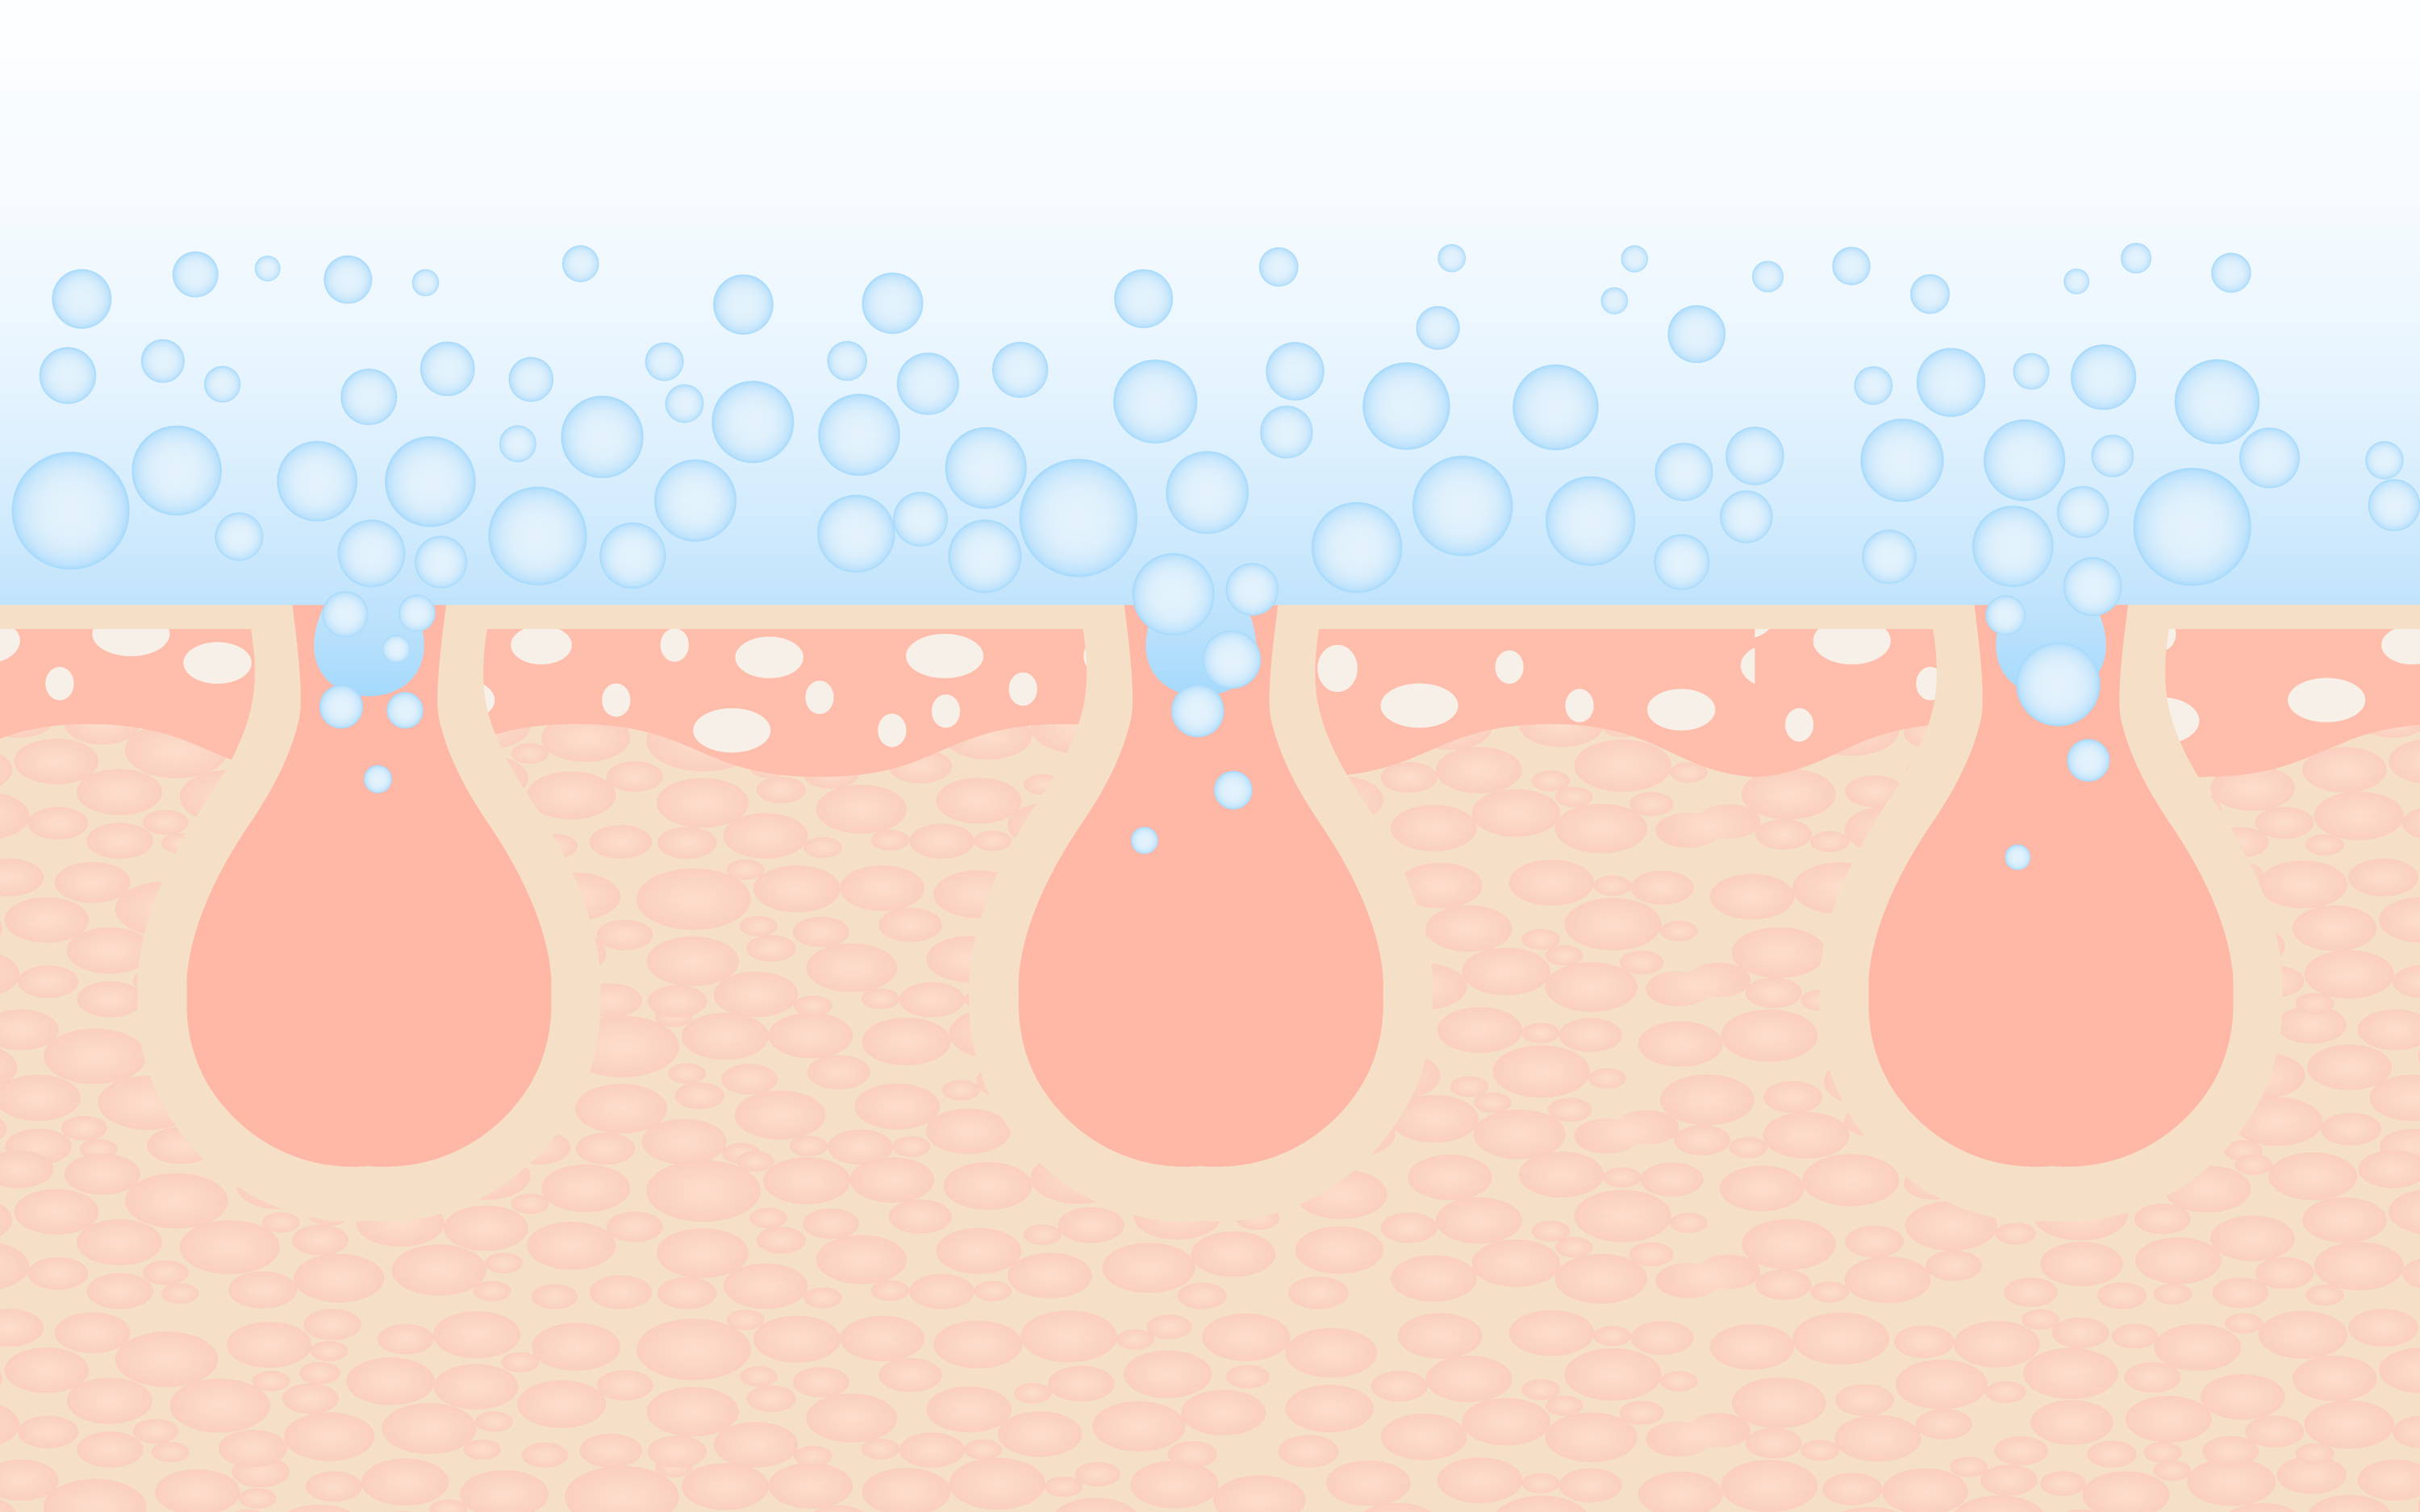 Una imagen de poros en la piel con burbujas azules